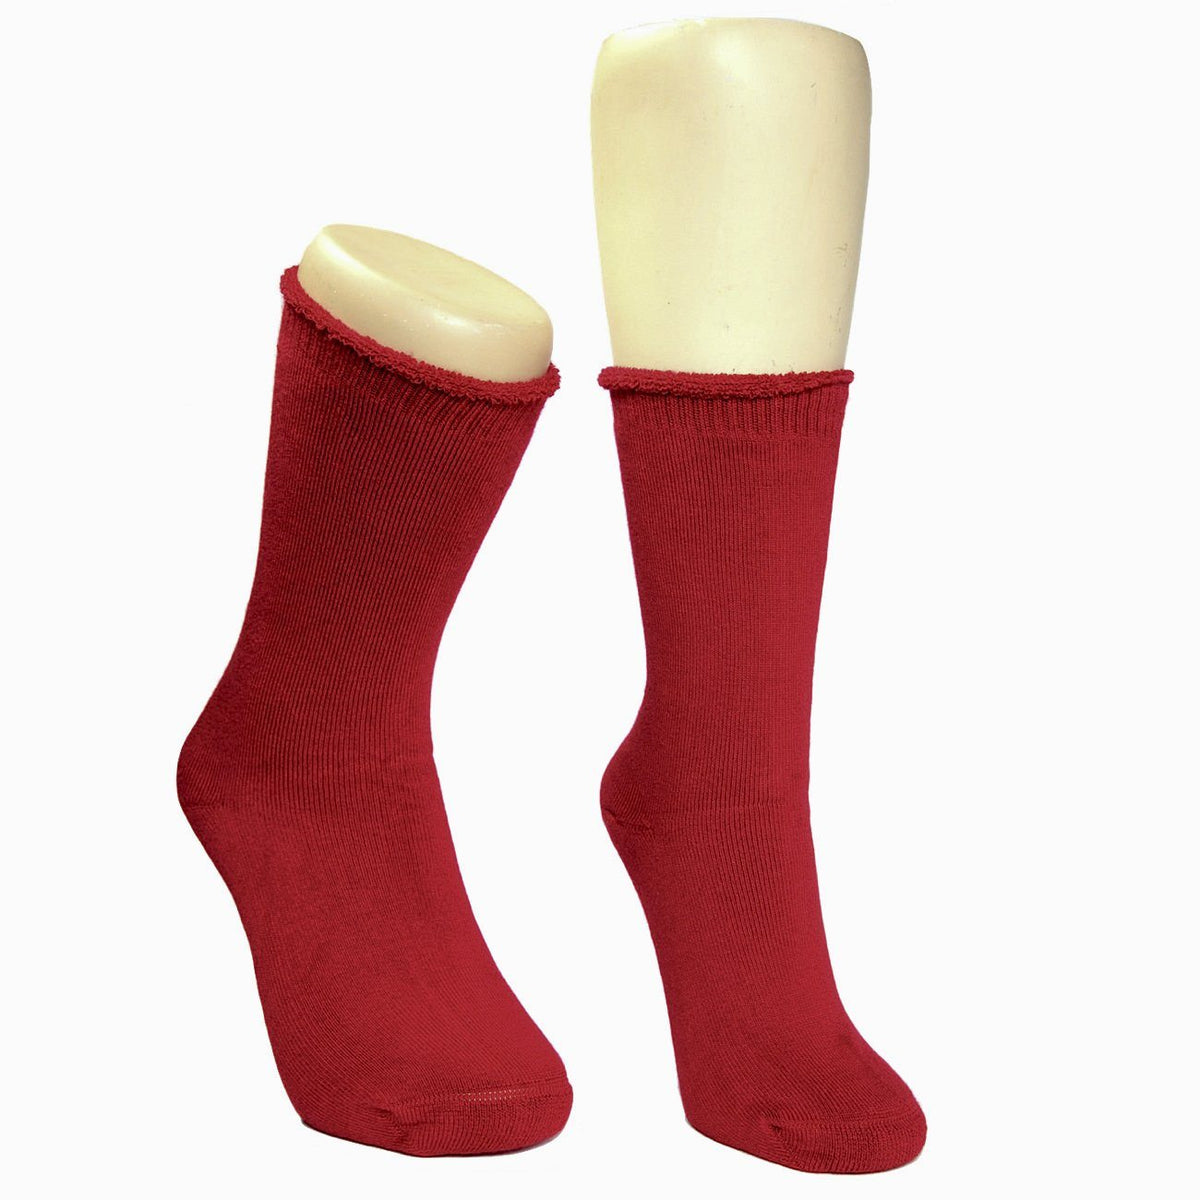 Mongrel Socks, Bamboo Full Cushion, Hypoallergenic, Antibacterial, Eco Friendly Red Socks Mongrel Socks 